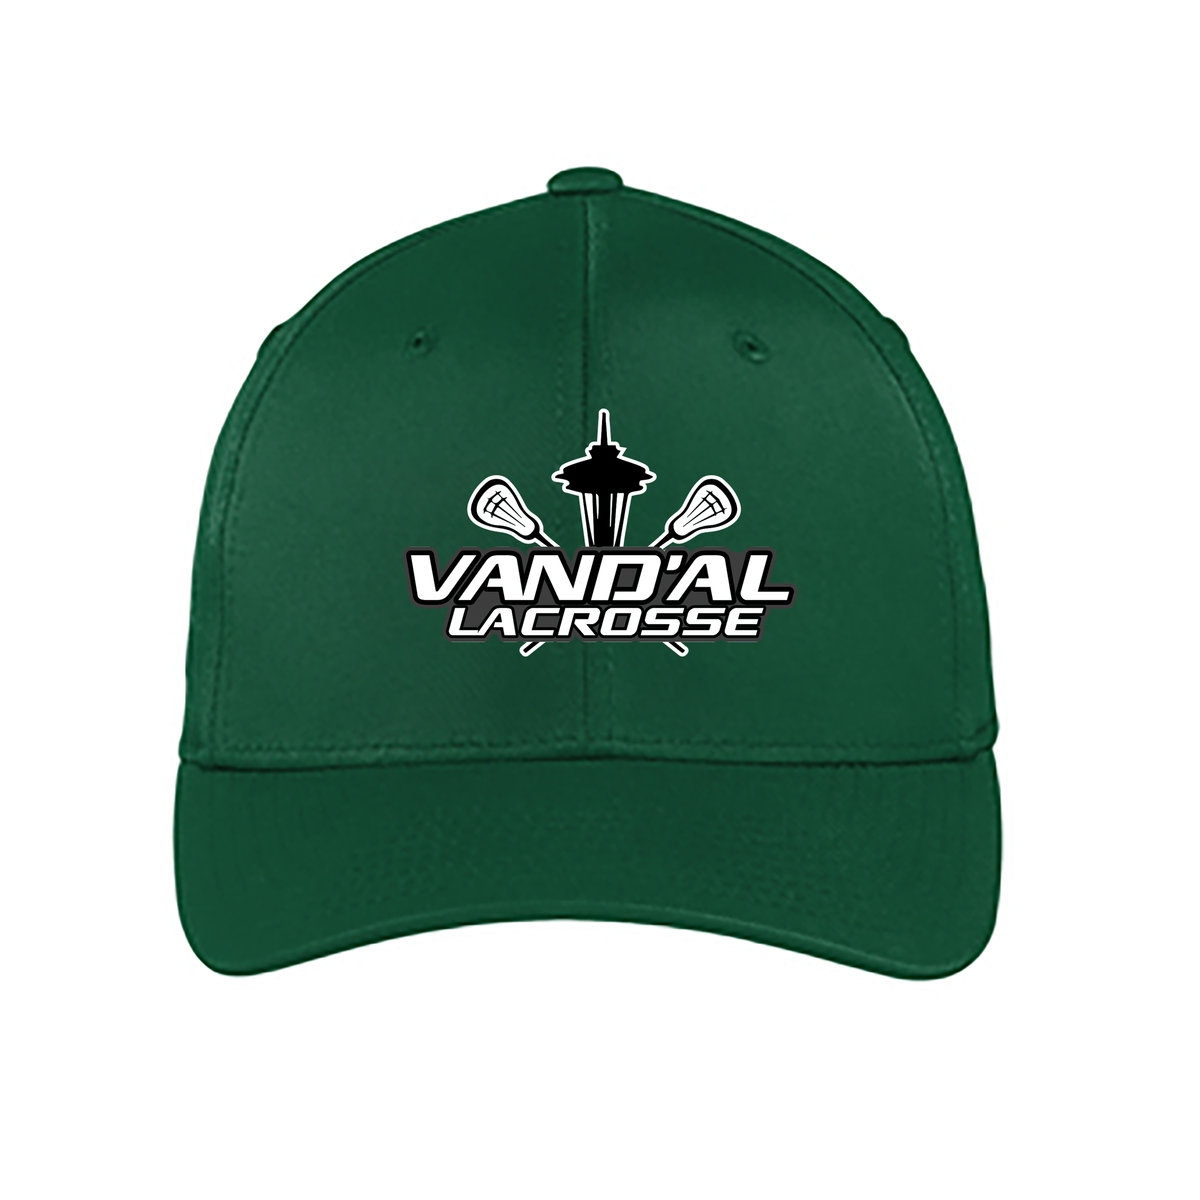 Vand'al Lacrosse Performance Flex-Fit Hat